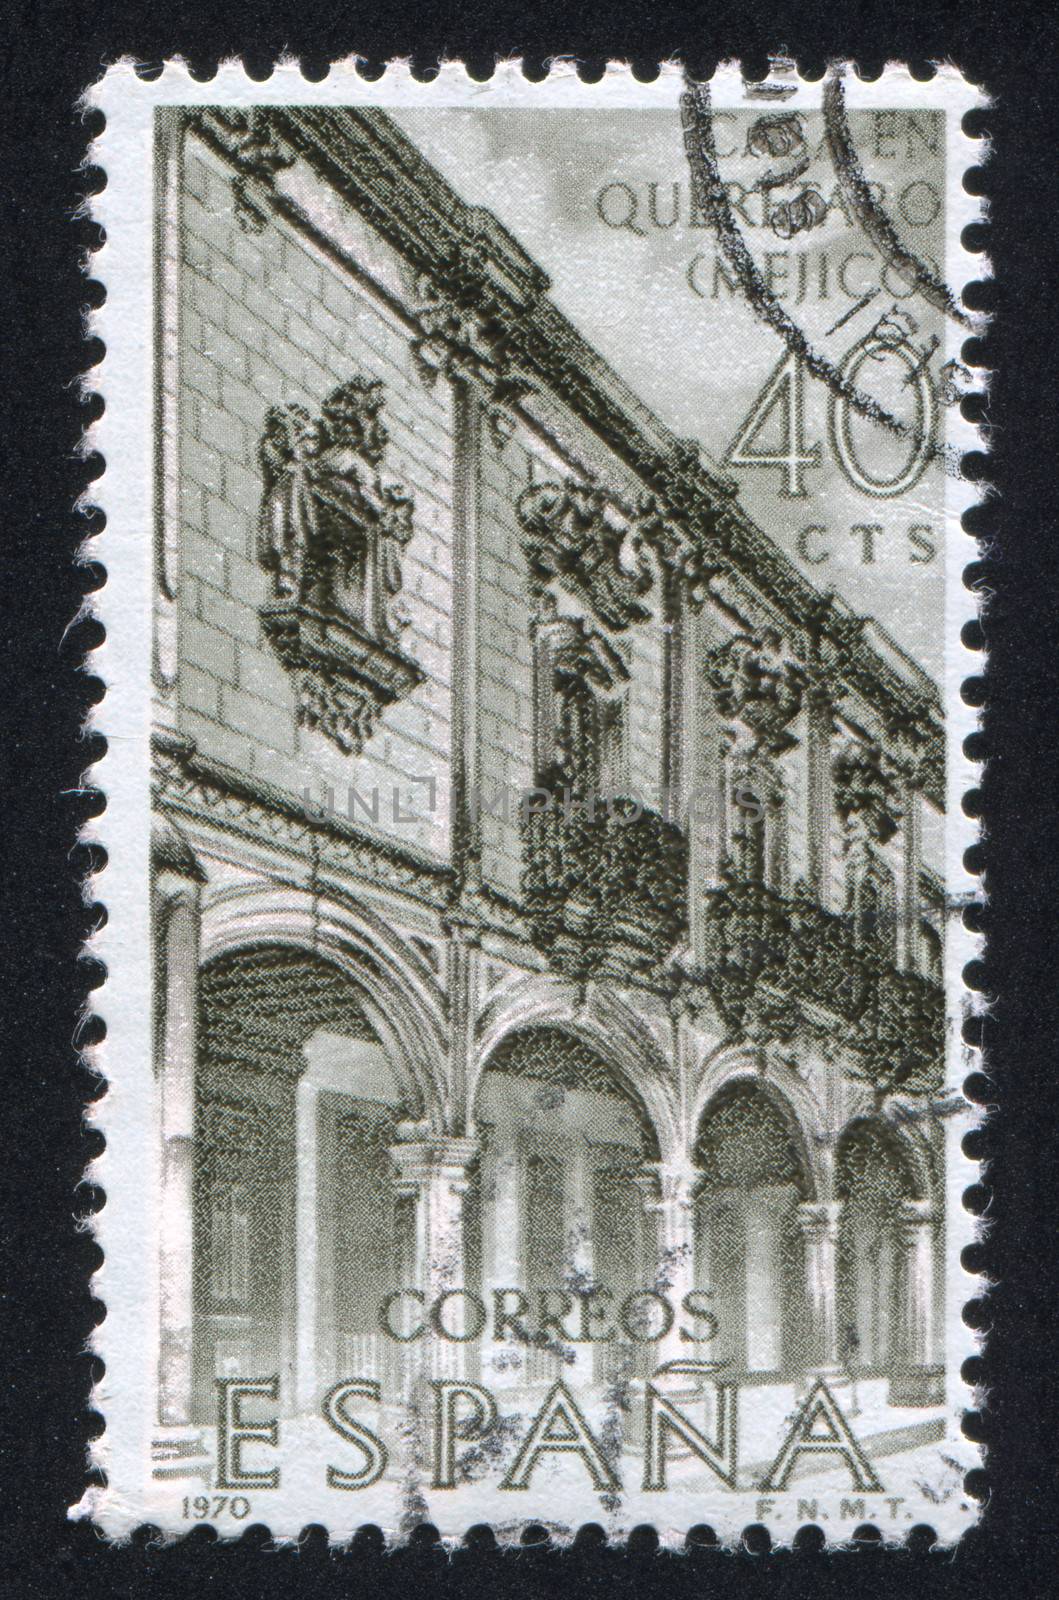 SPAIN - CIRCA 19670 stamp printed by Spain, shows Ecala House Queretaro, Mexico, circa 1970